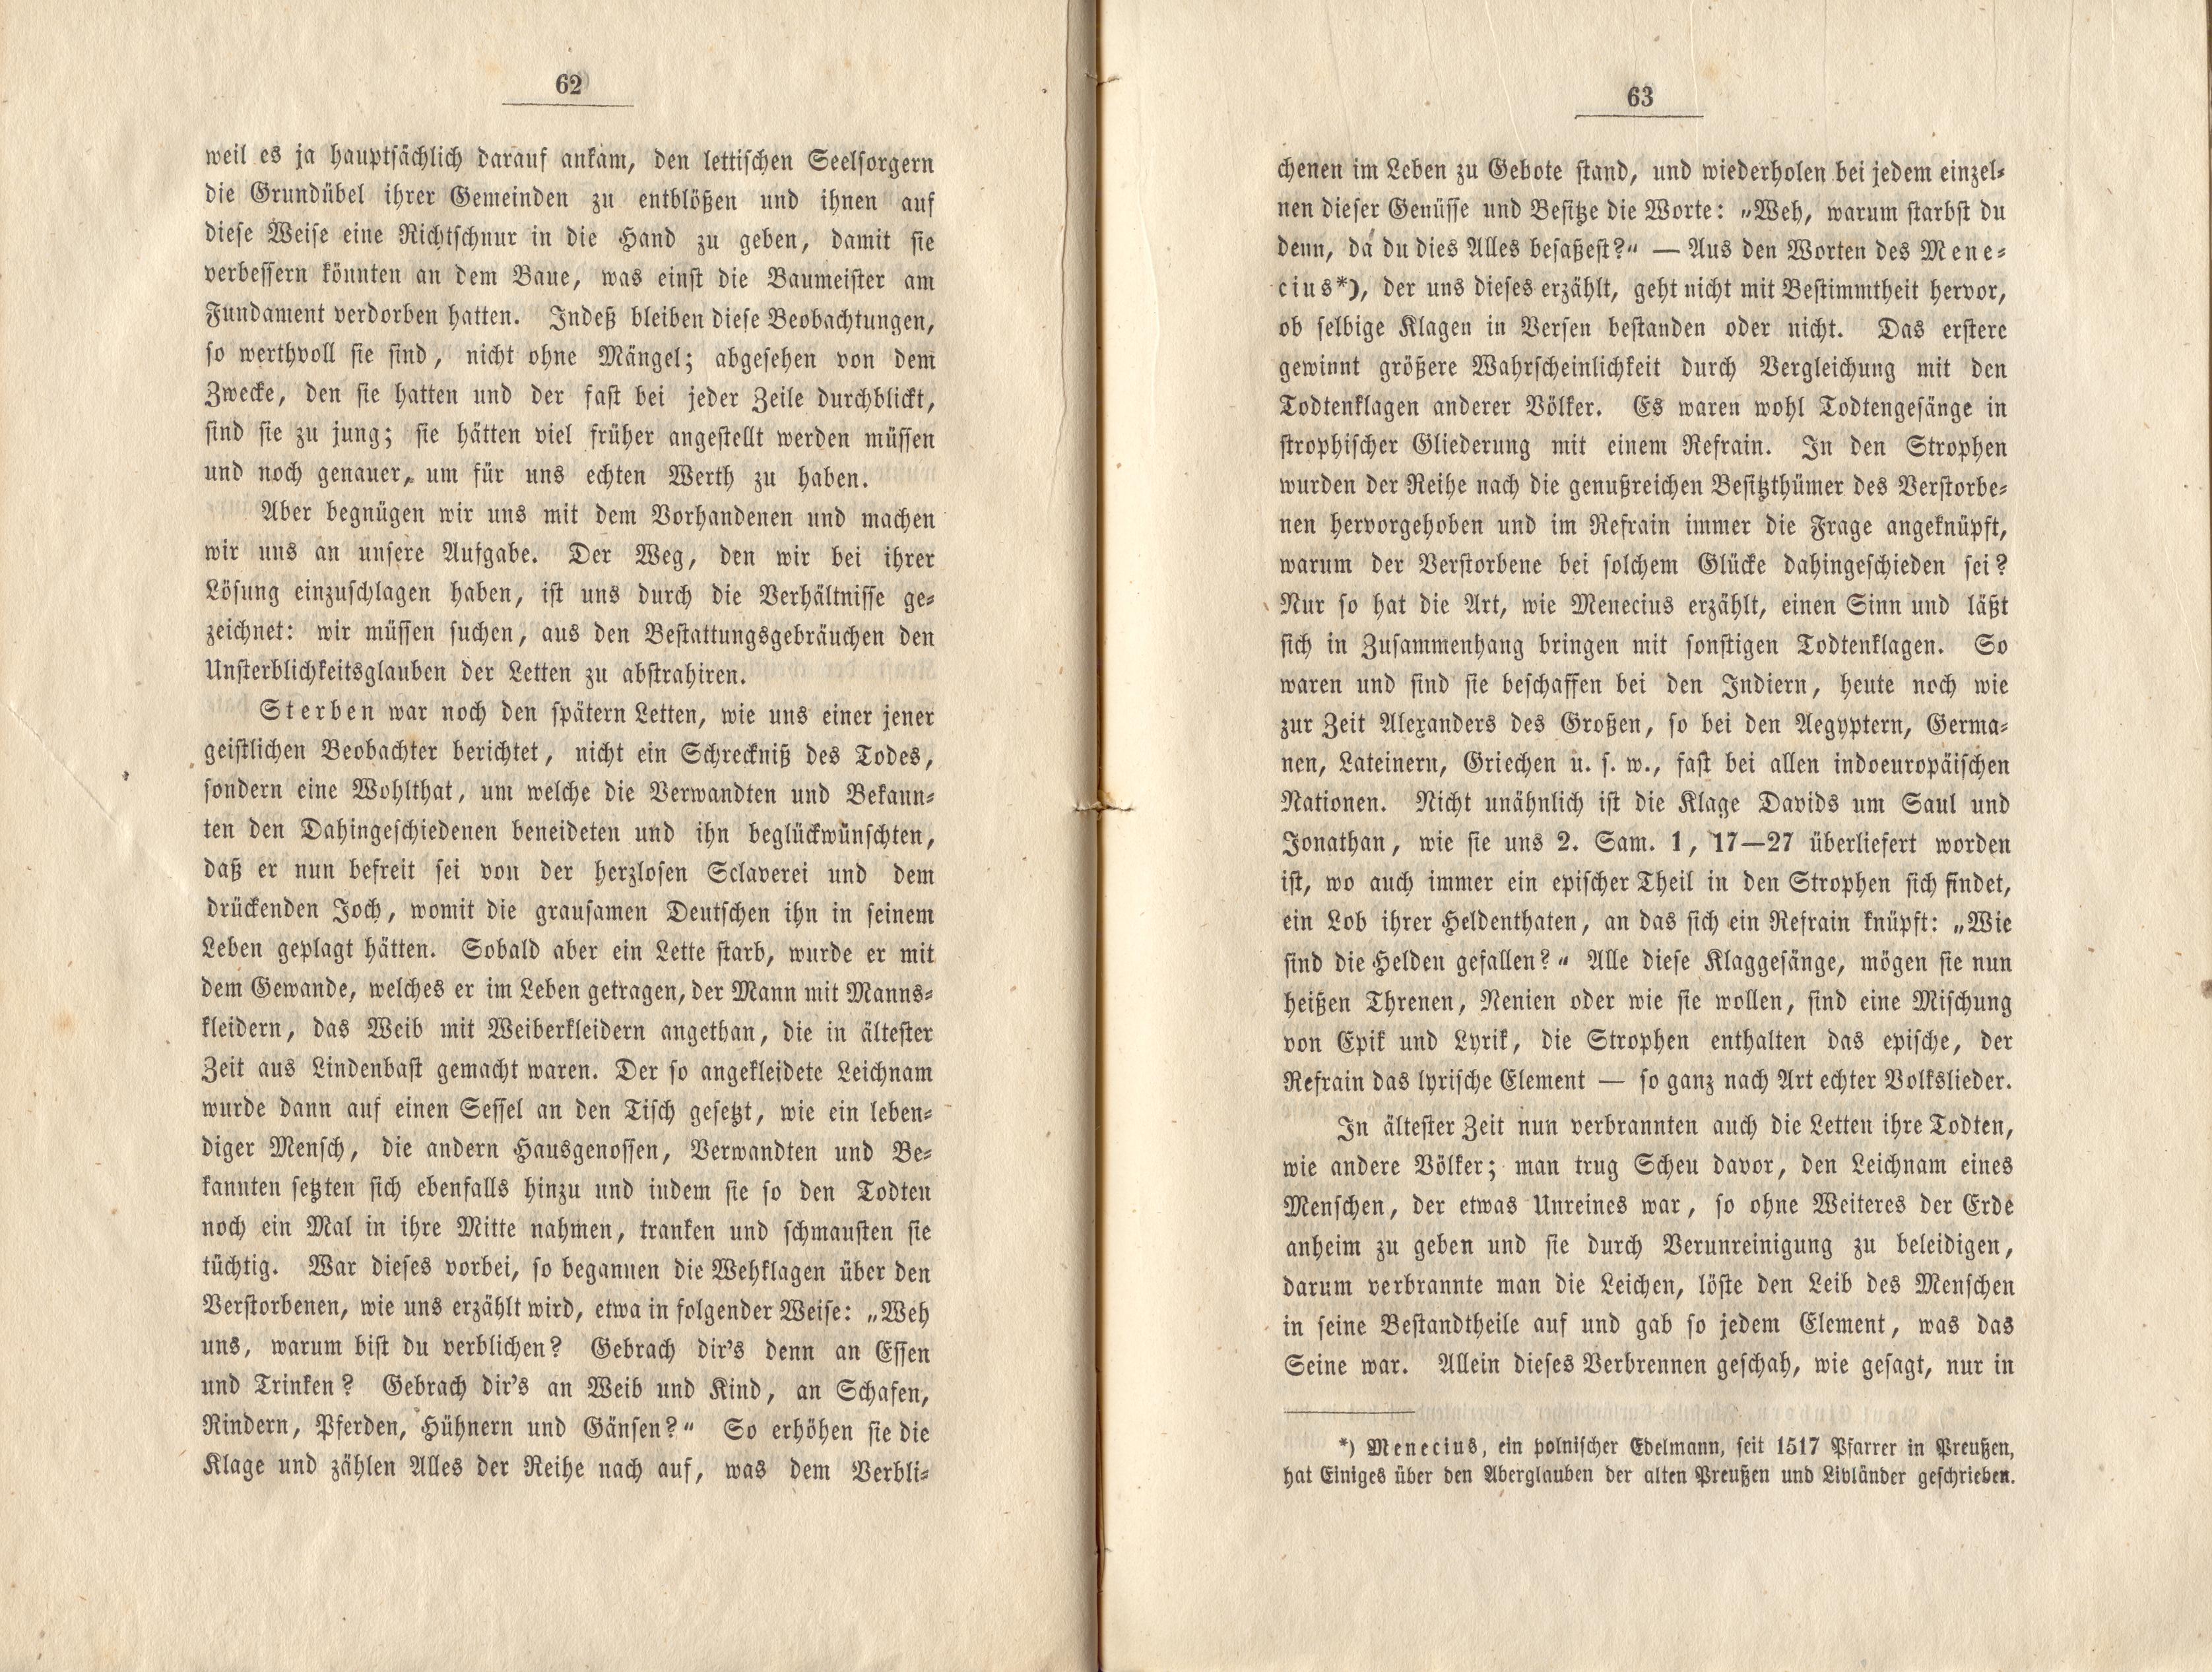 Felliner Blätter (1859) | 32. (62-63) Main body of text